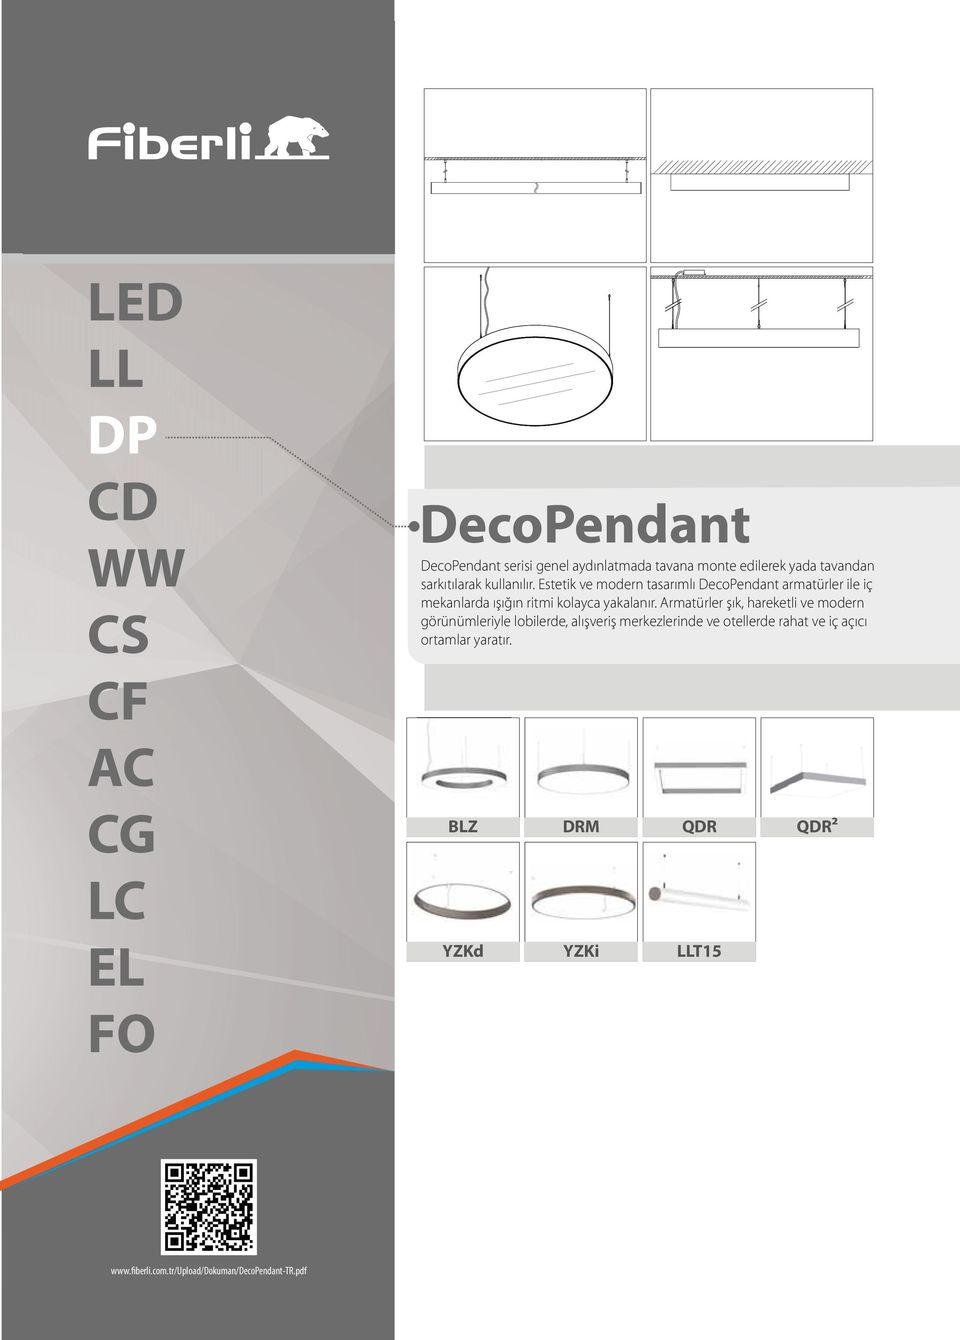 Estetik ve modern tasarımlı DecoPendant armatürler ile iç mekanlarda ışığın ritmi kolayca yakalanır.